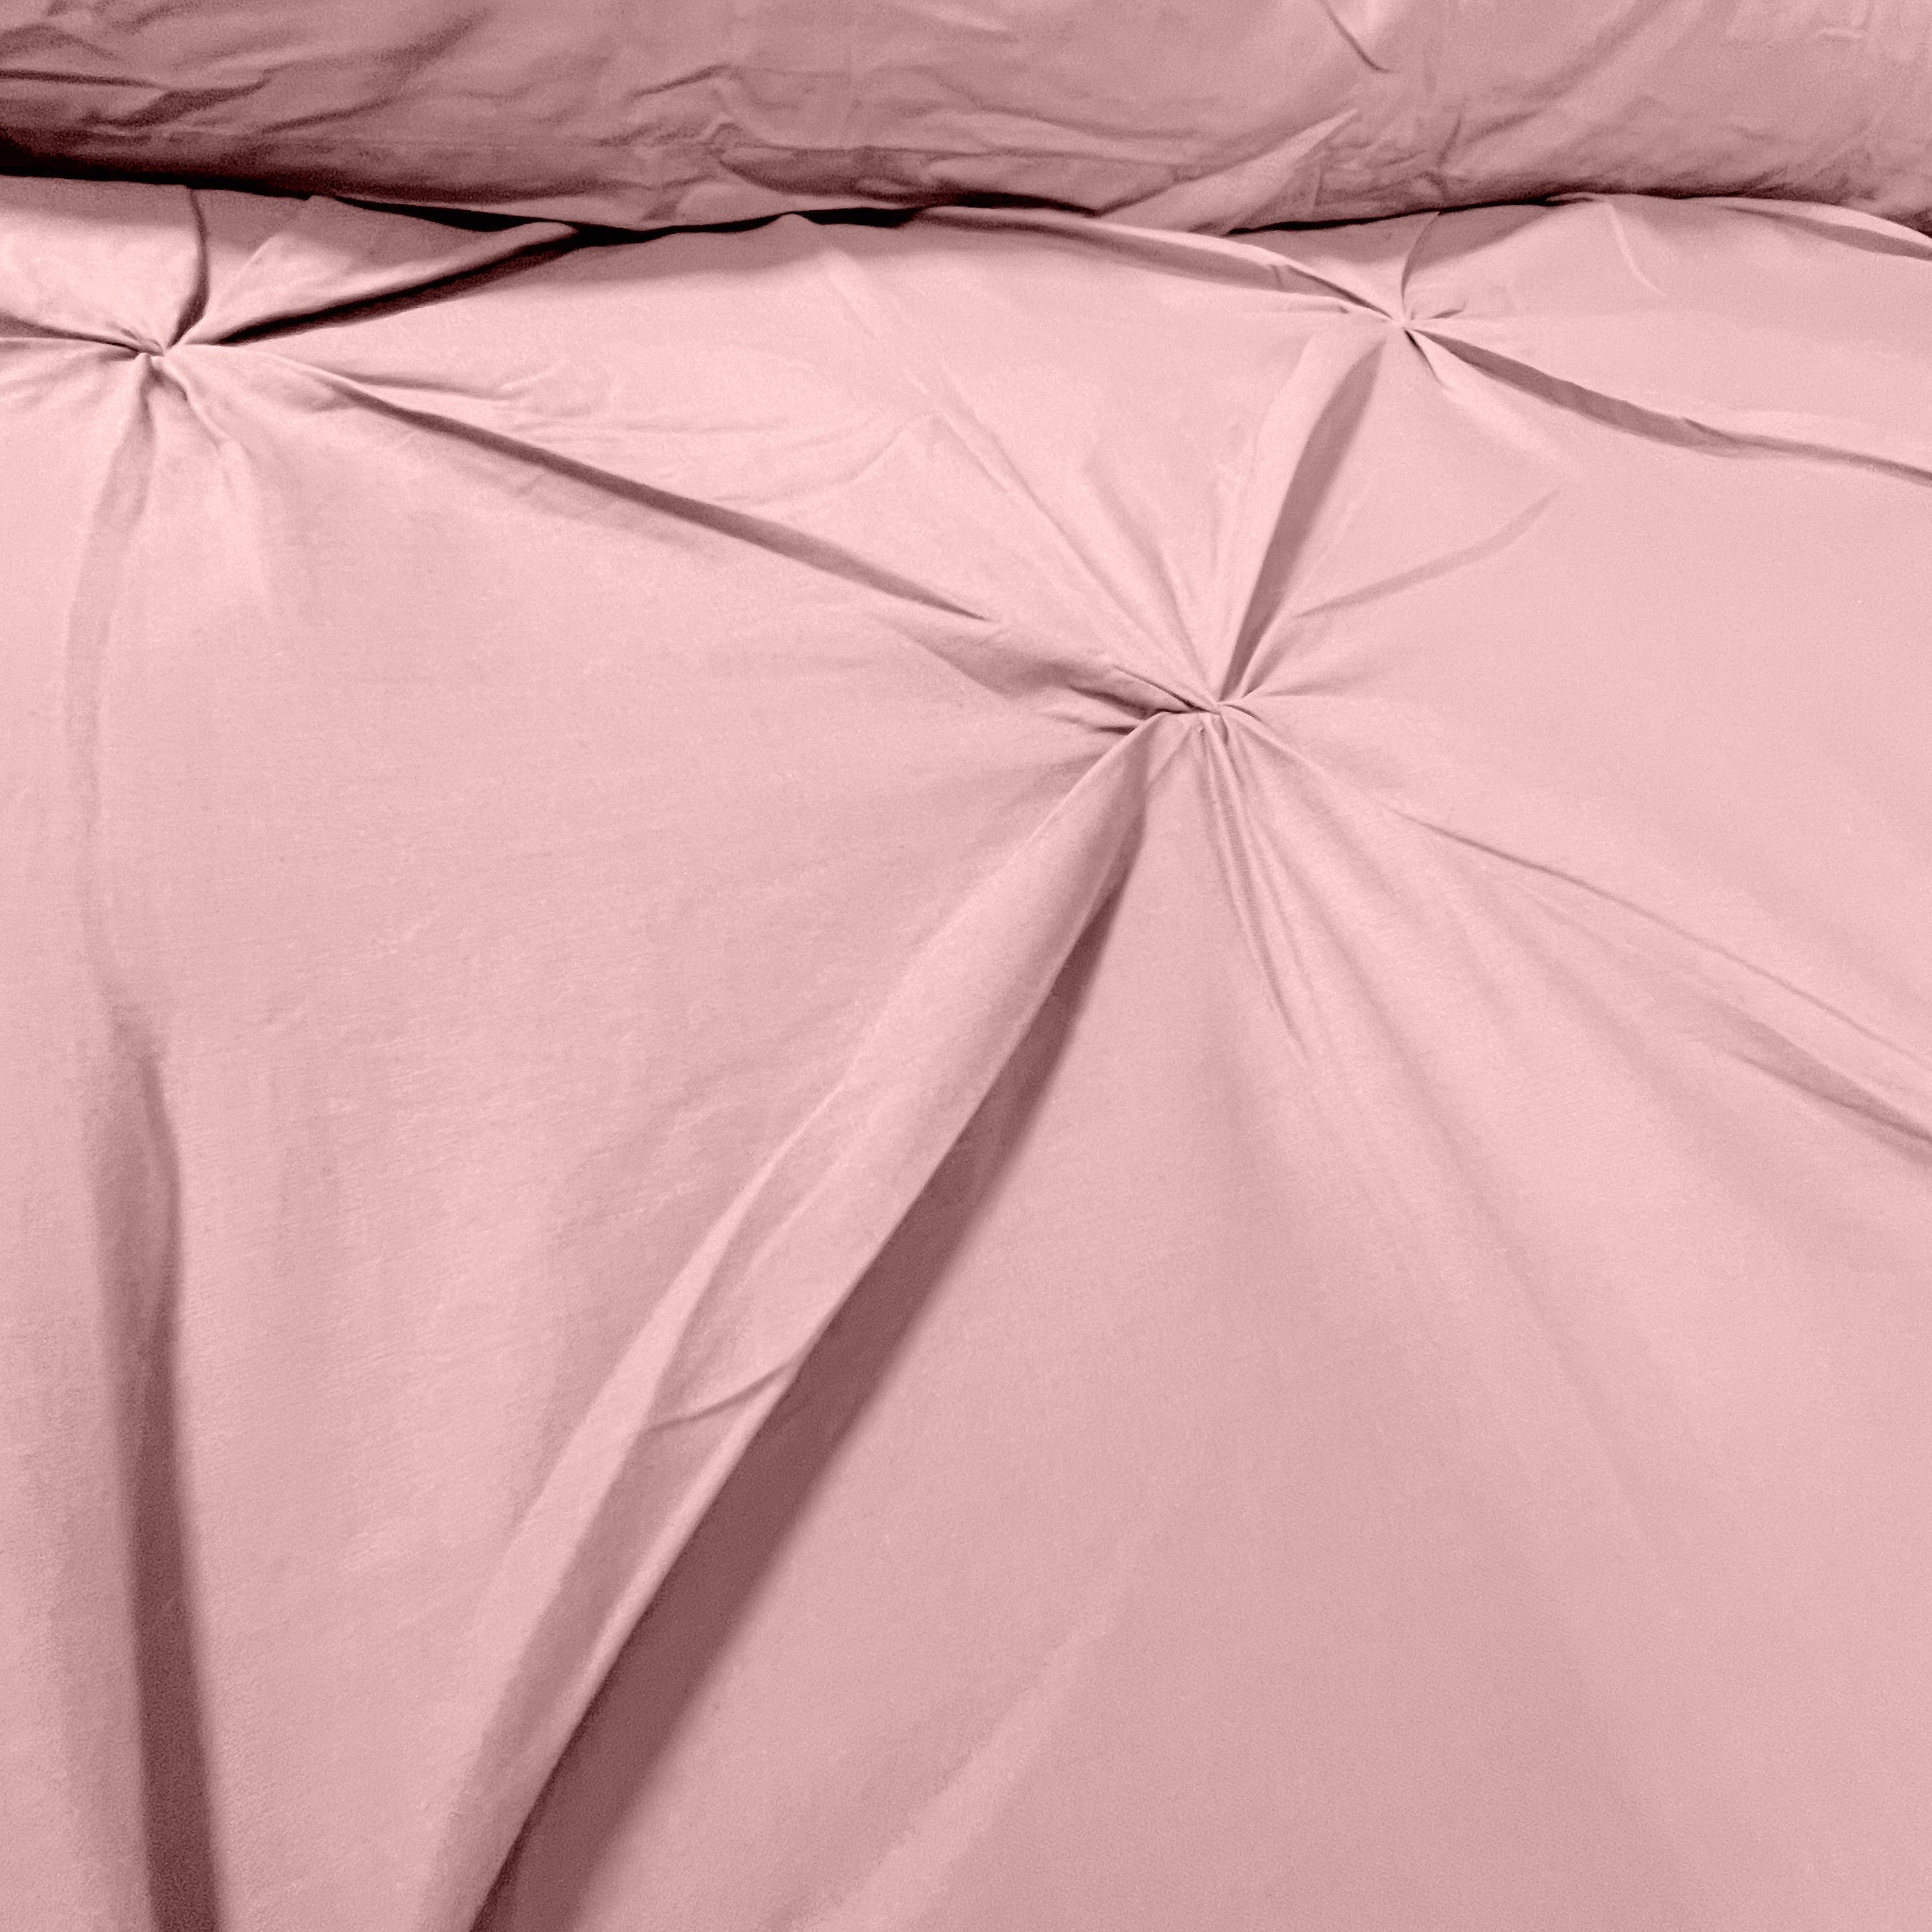 Roze dekbedovertrekset voor een vleugje luxe - Monte Carlo.